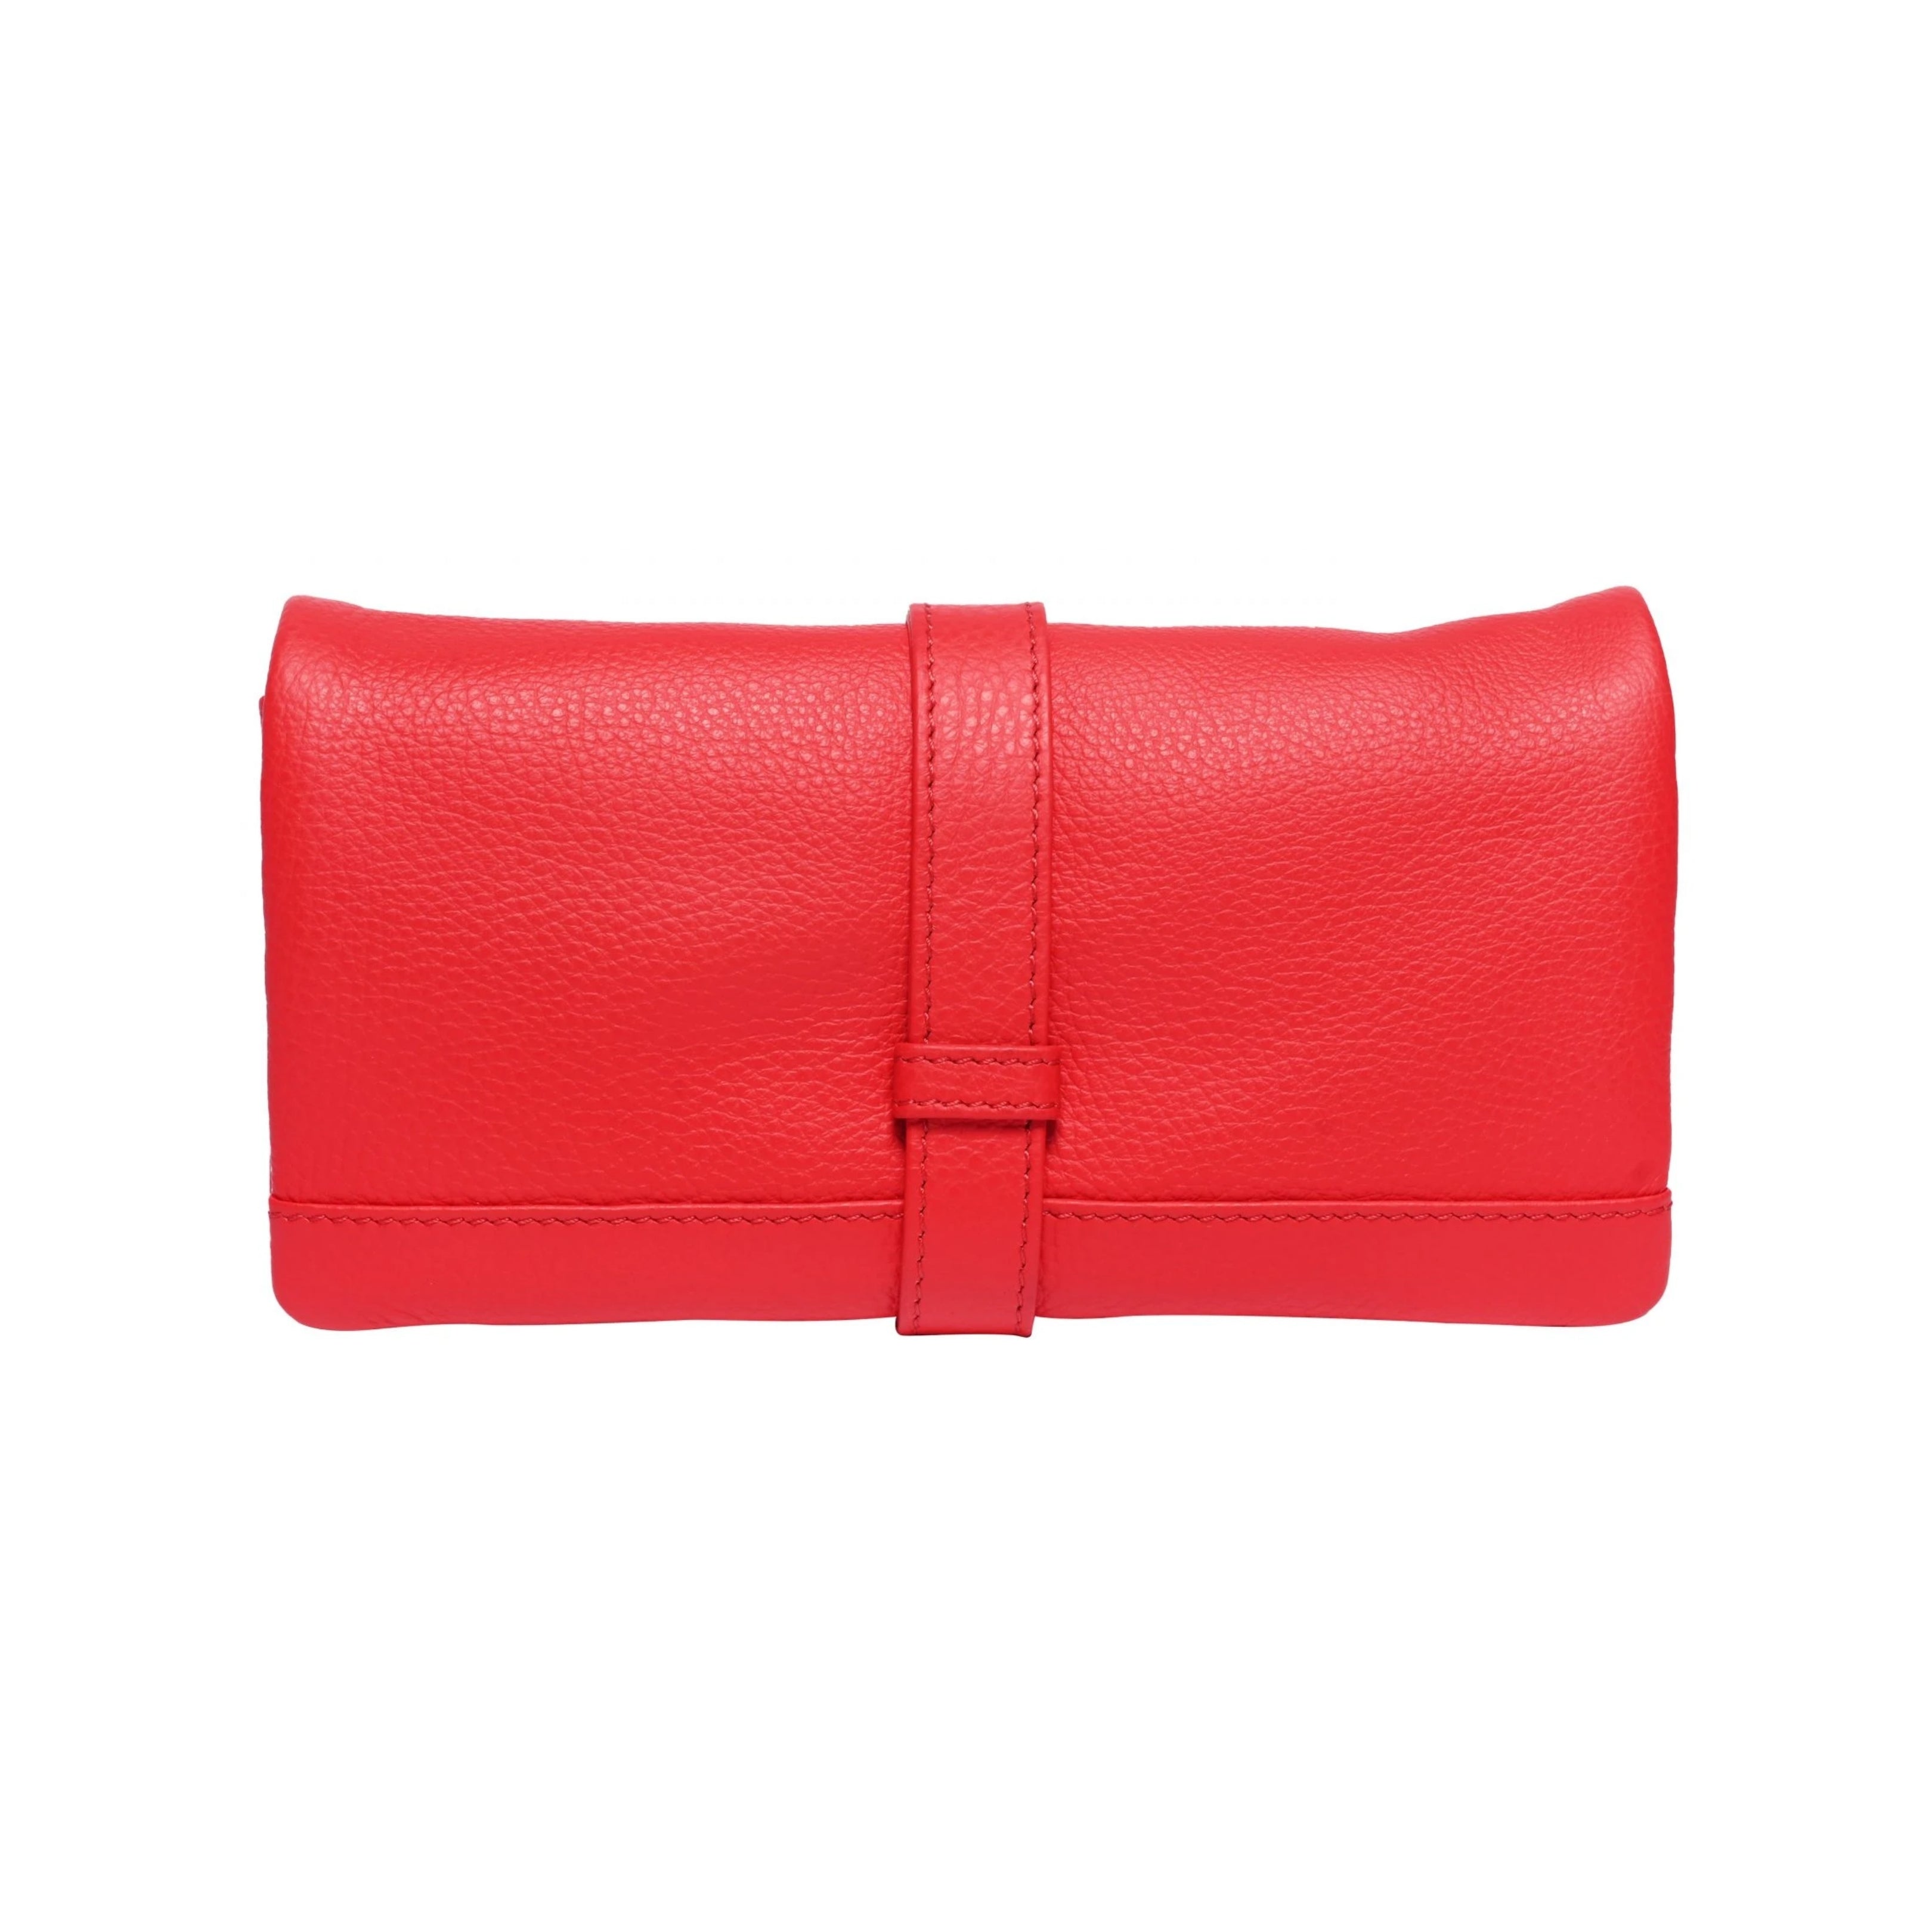 Ladies Soft Wallet - Scarlet Red